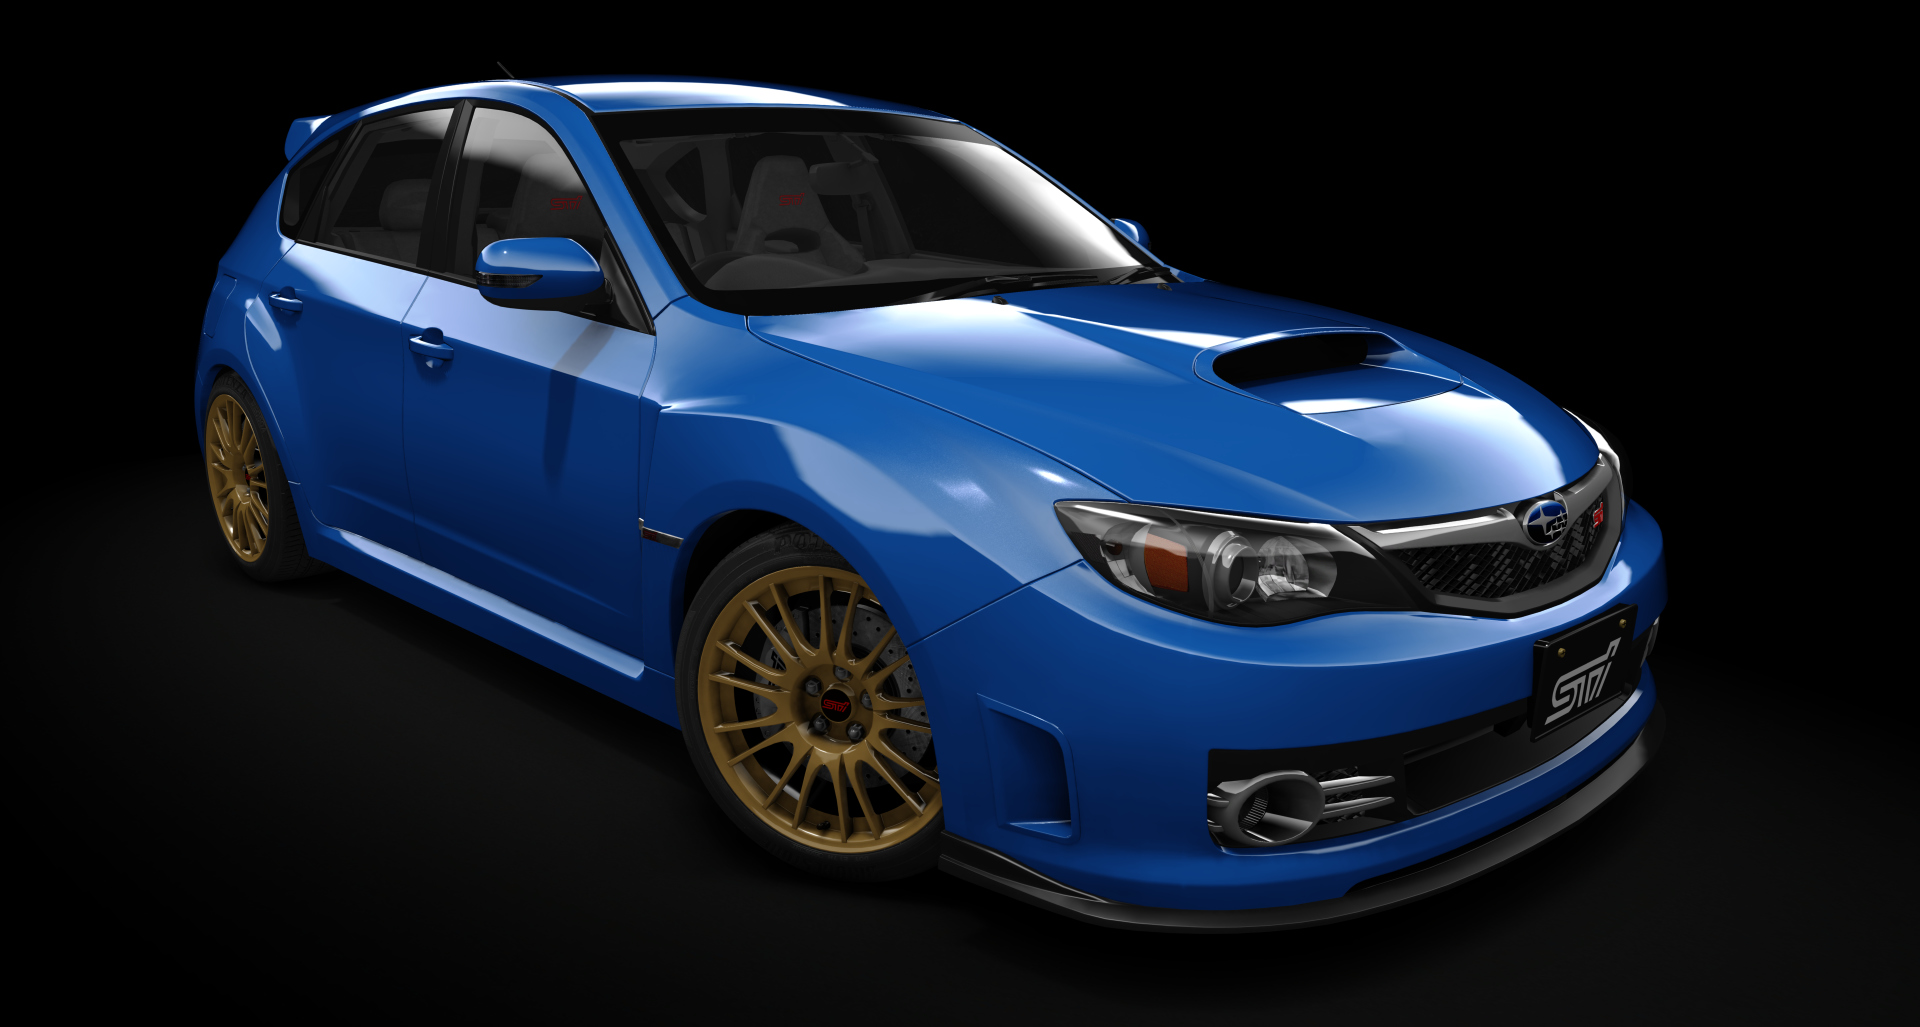 Subaru Impreza WRX STi [GRB], skin world_rally_blue